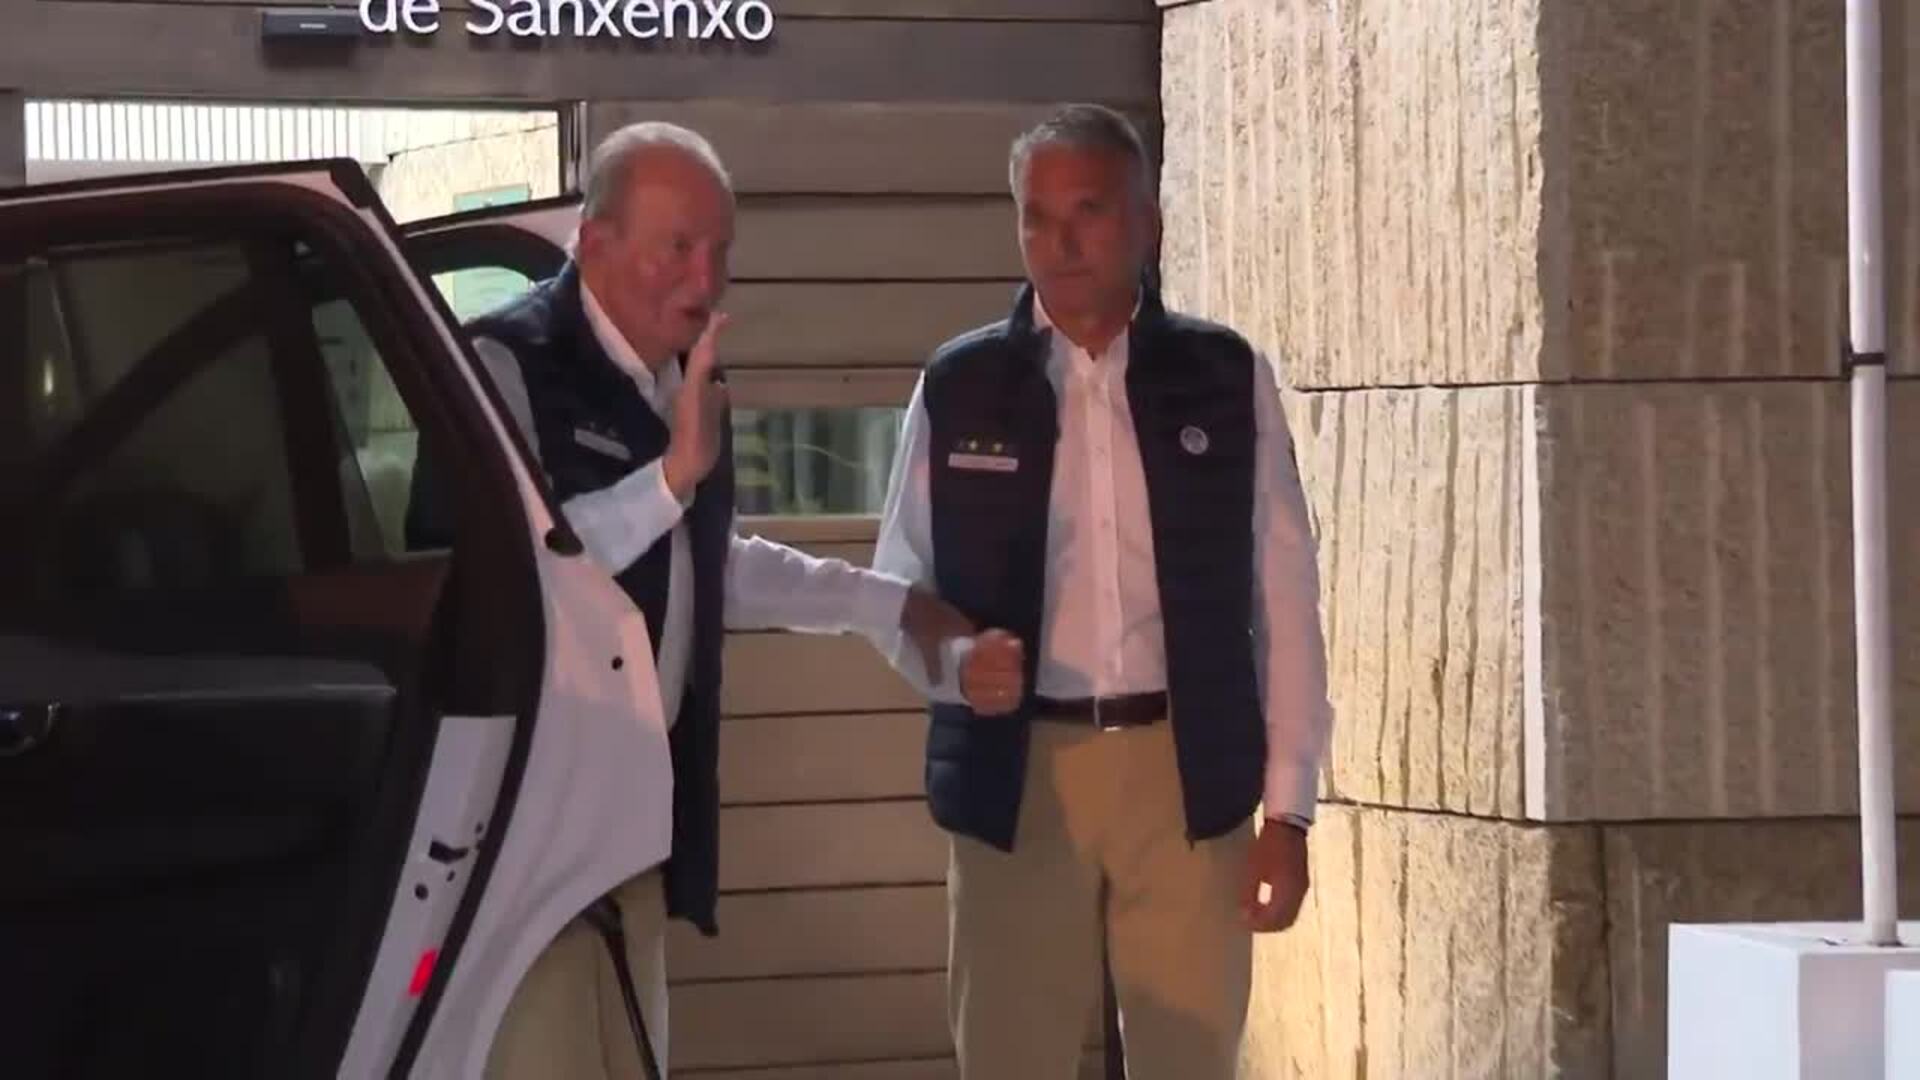 La surrealista visita que ha recibido el Rey Juan Carlos en Sanxenxo